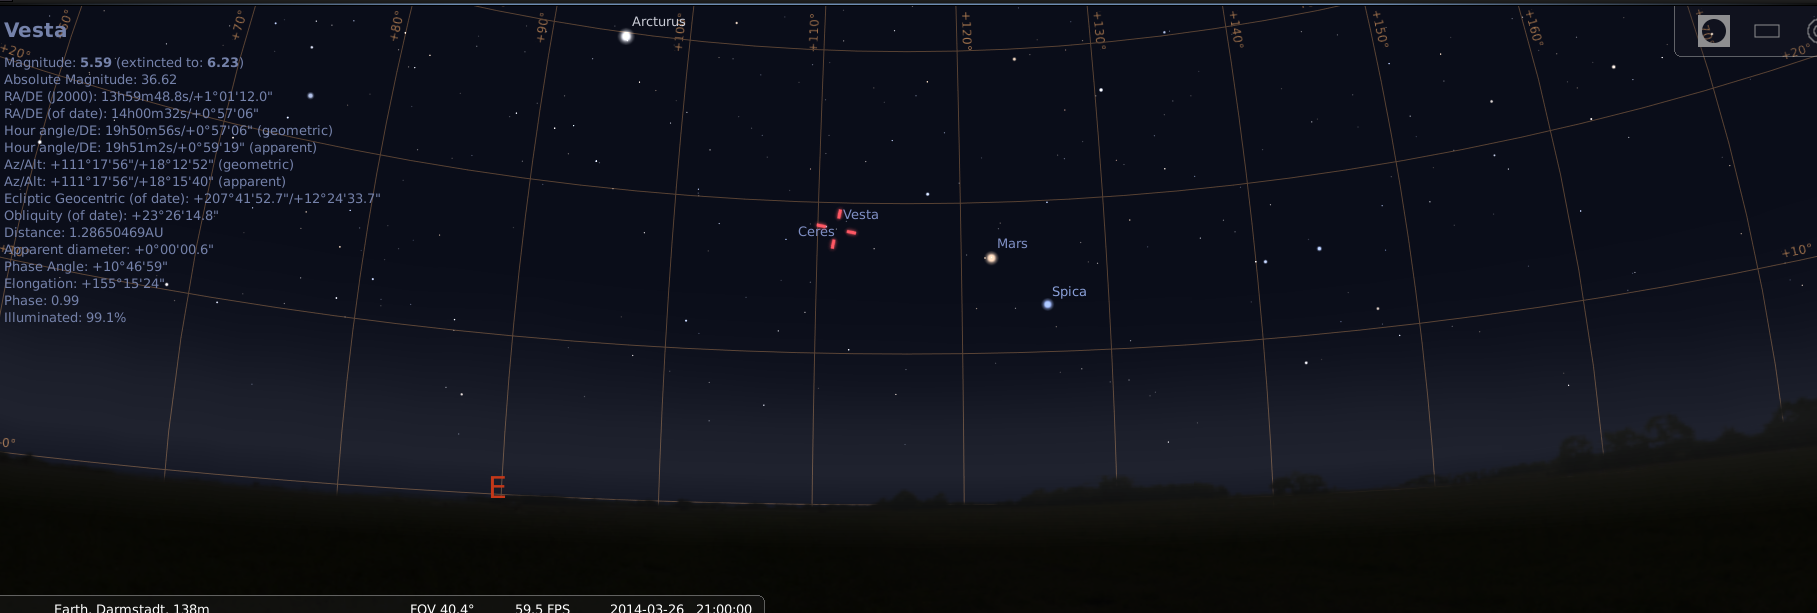 Mars, Spica, Ceres und Vesta am Abendhimmel des 26.3.2014